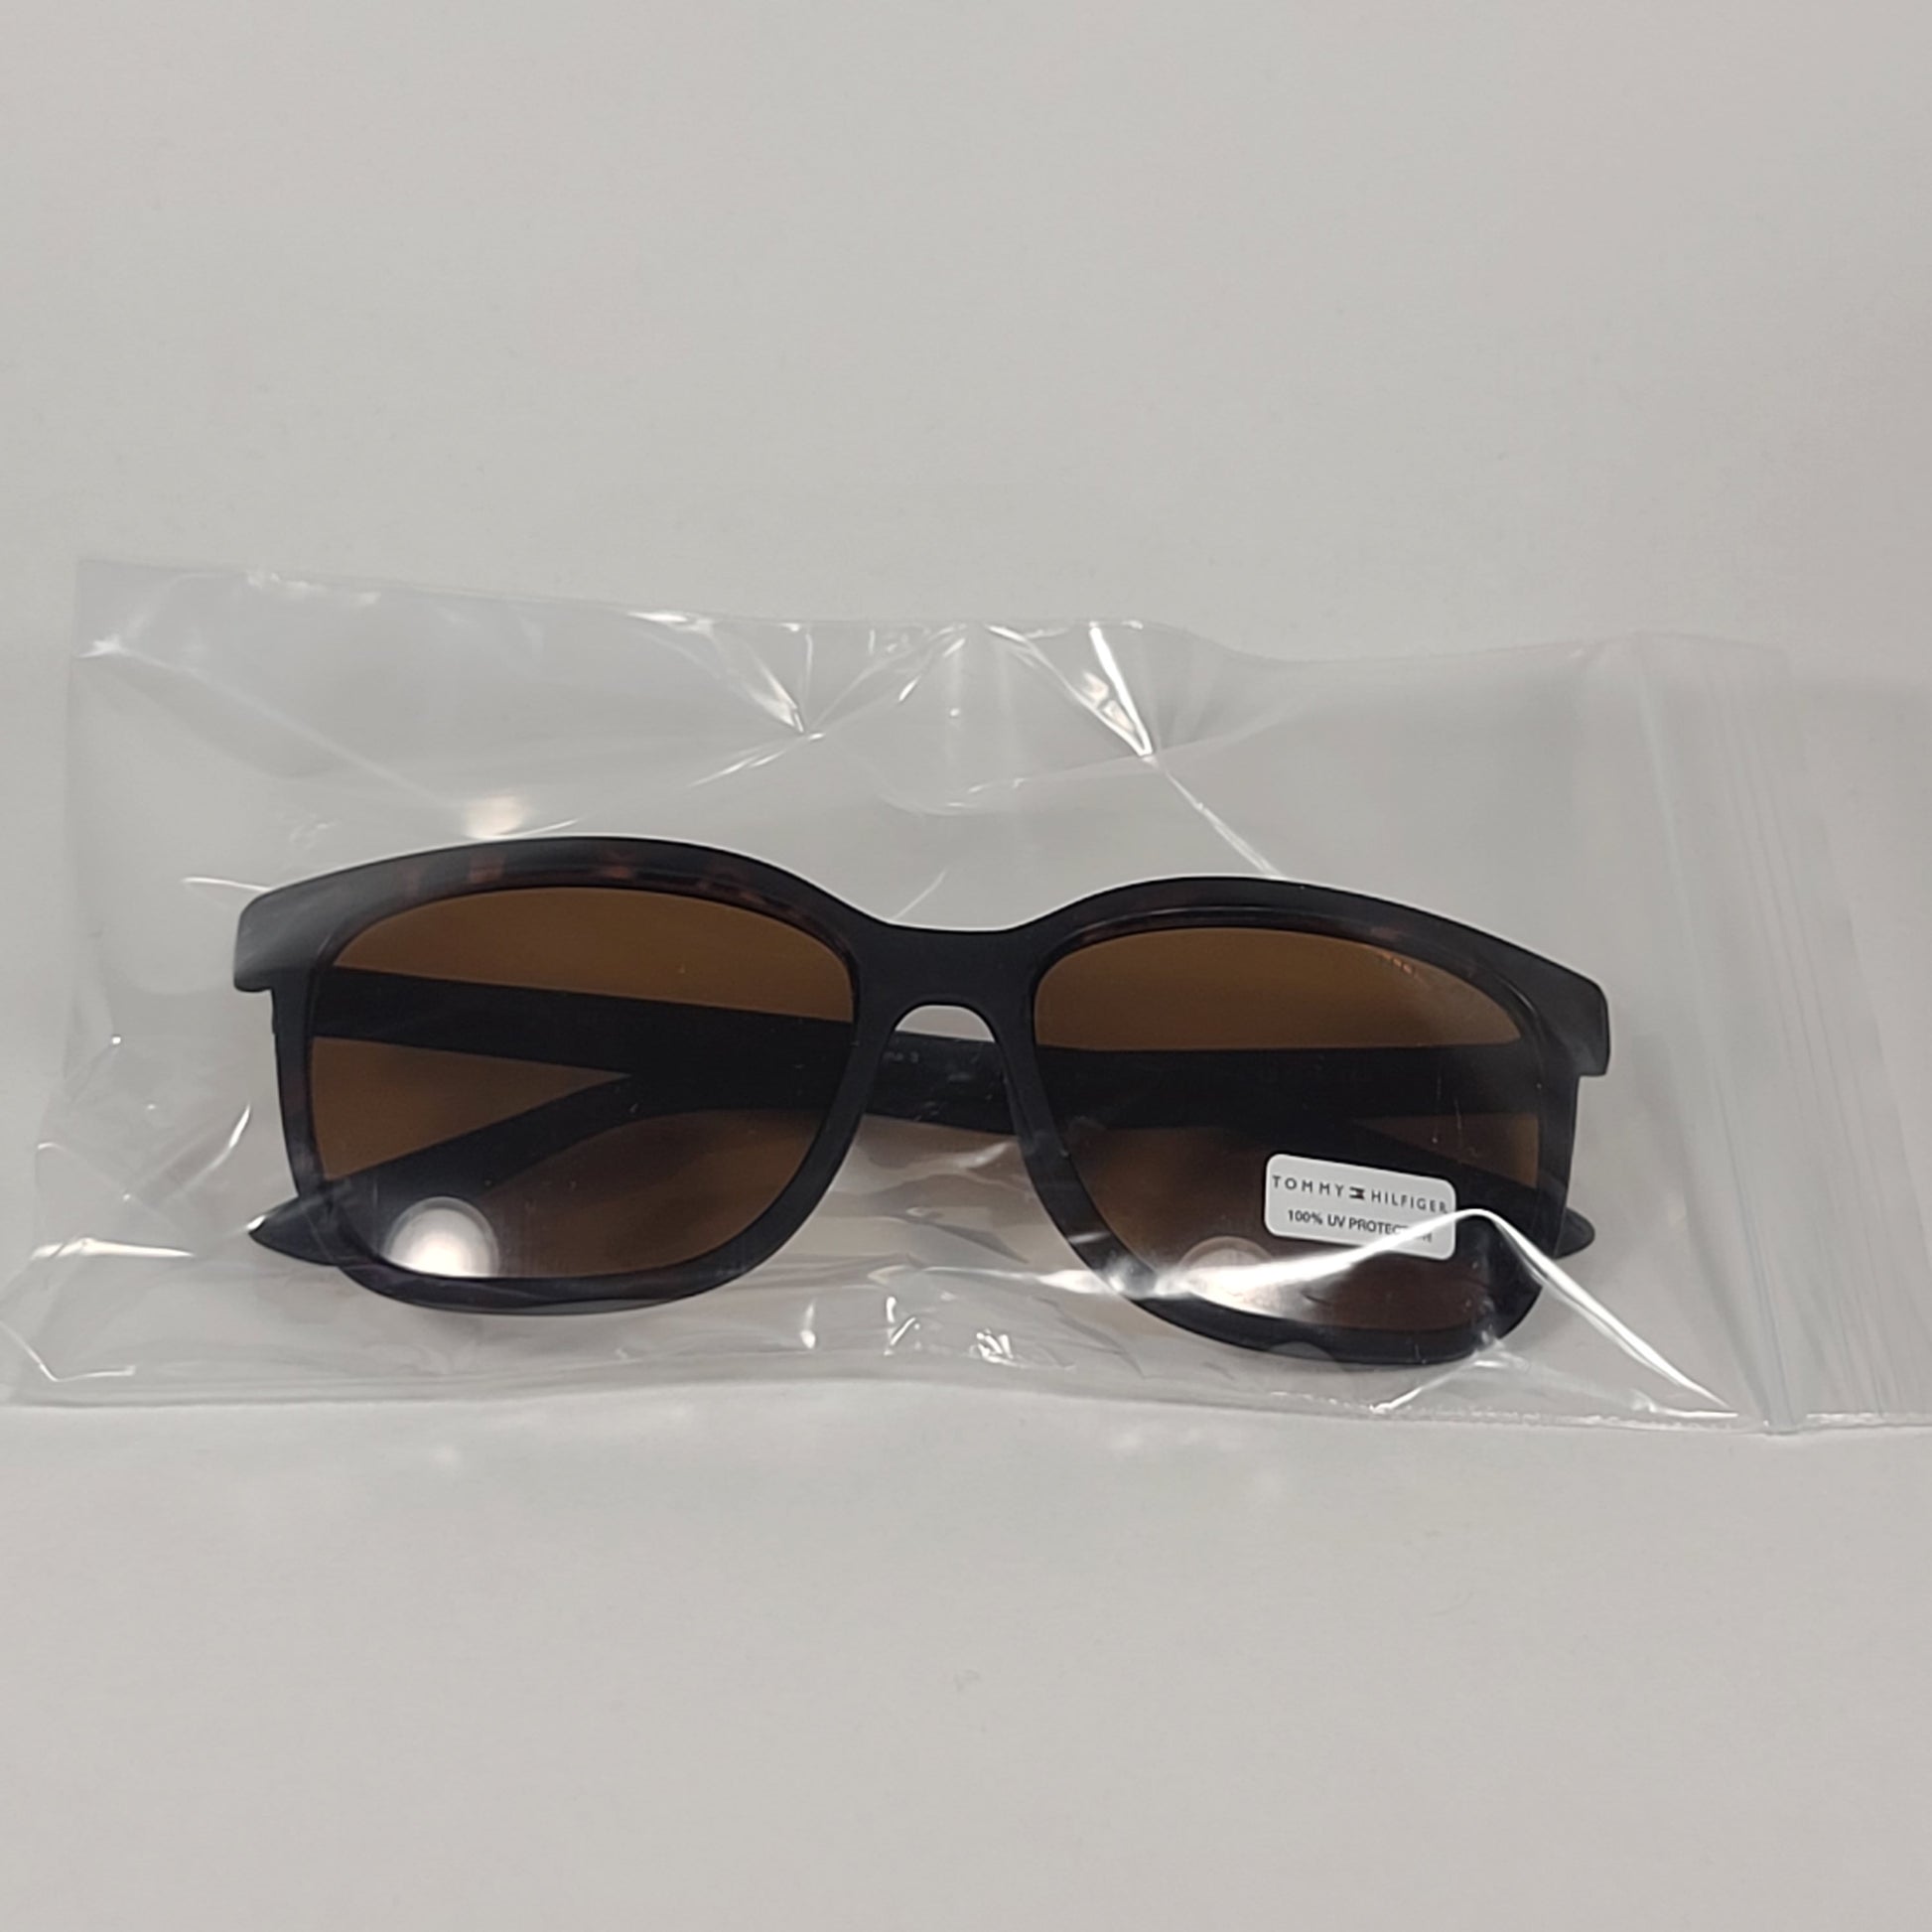 Tommy Hilfiger Captain Square Sunglasses Brown Matte Tortoise Frame Brown Lens CAPTAIN MP OU570 - Sunglasses